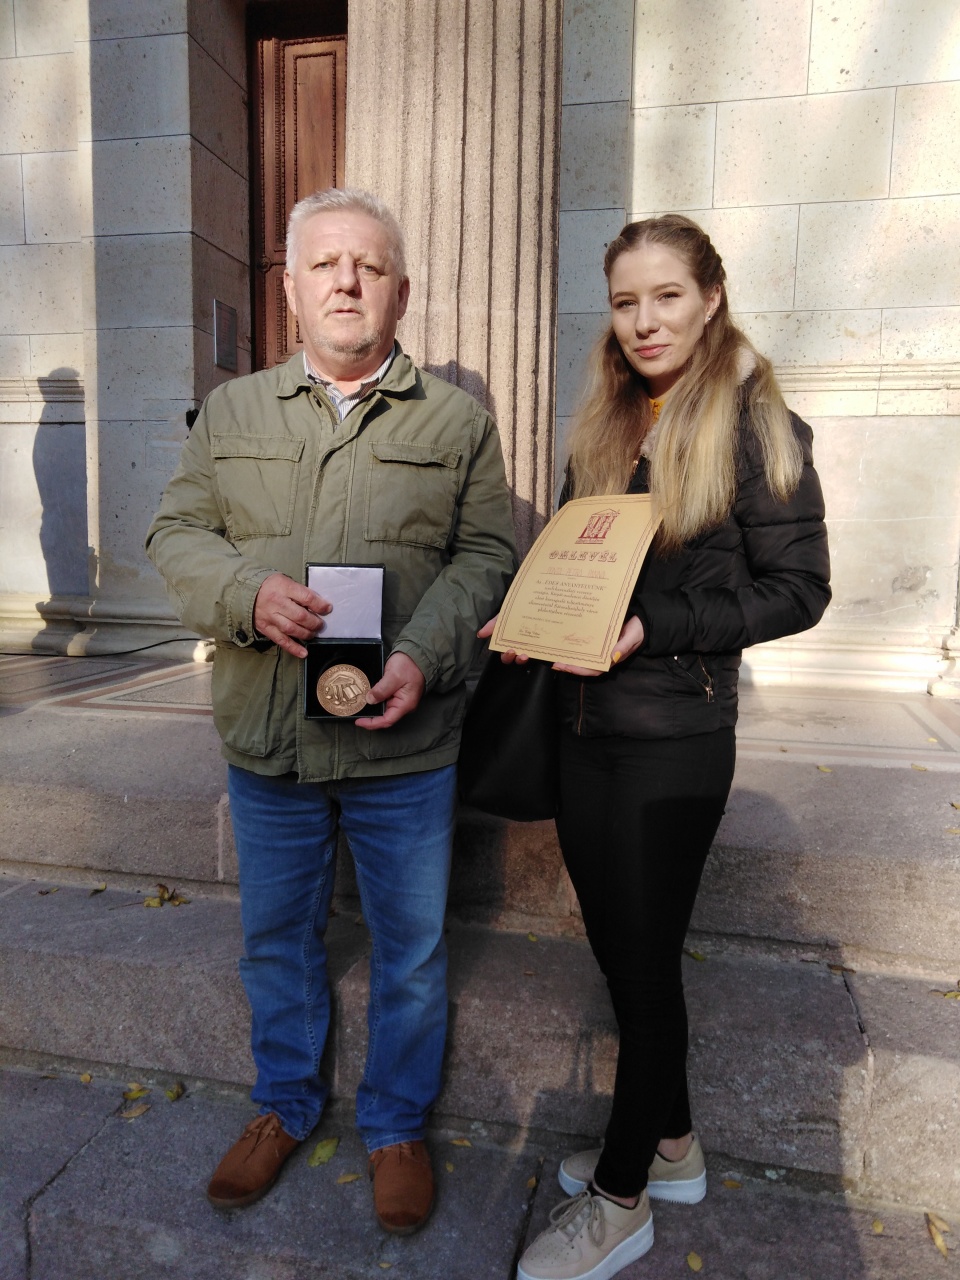 Széchenyis diák nyerte ismét a „Széphalom emlékplakettet”